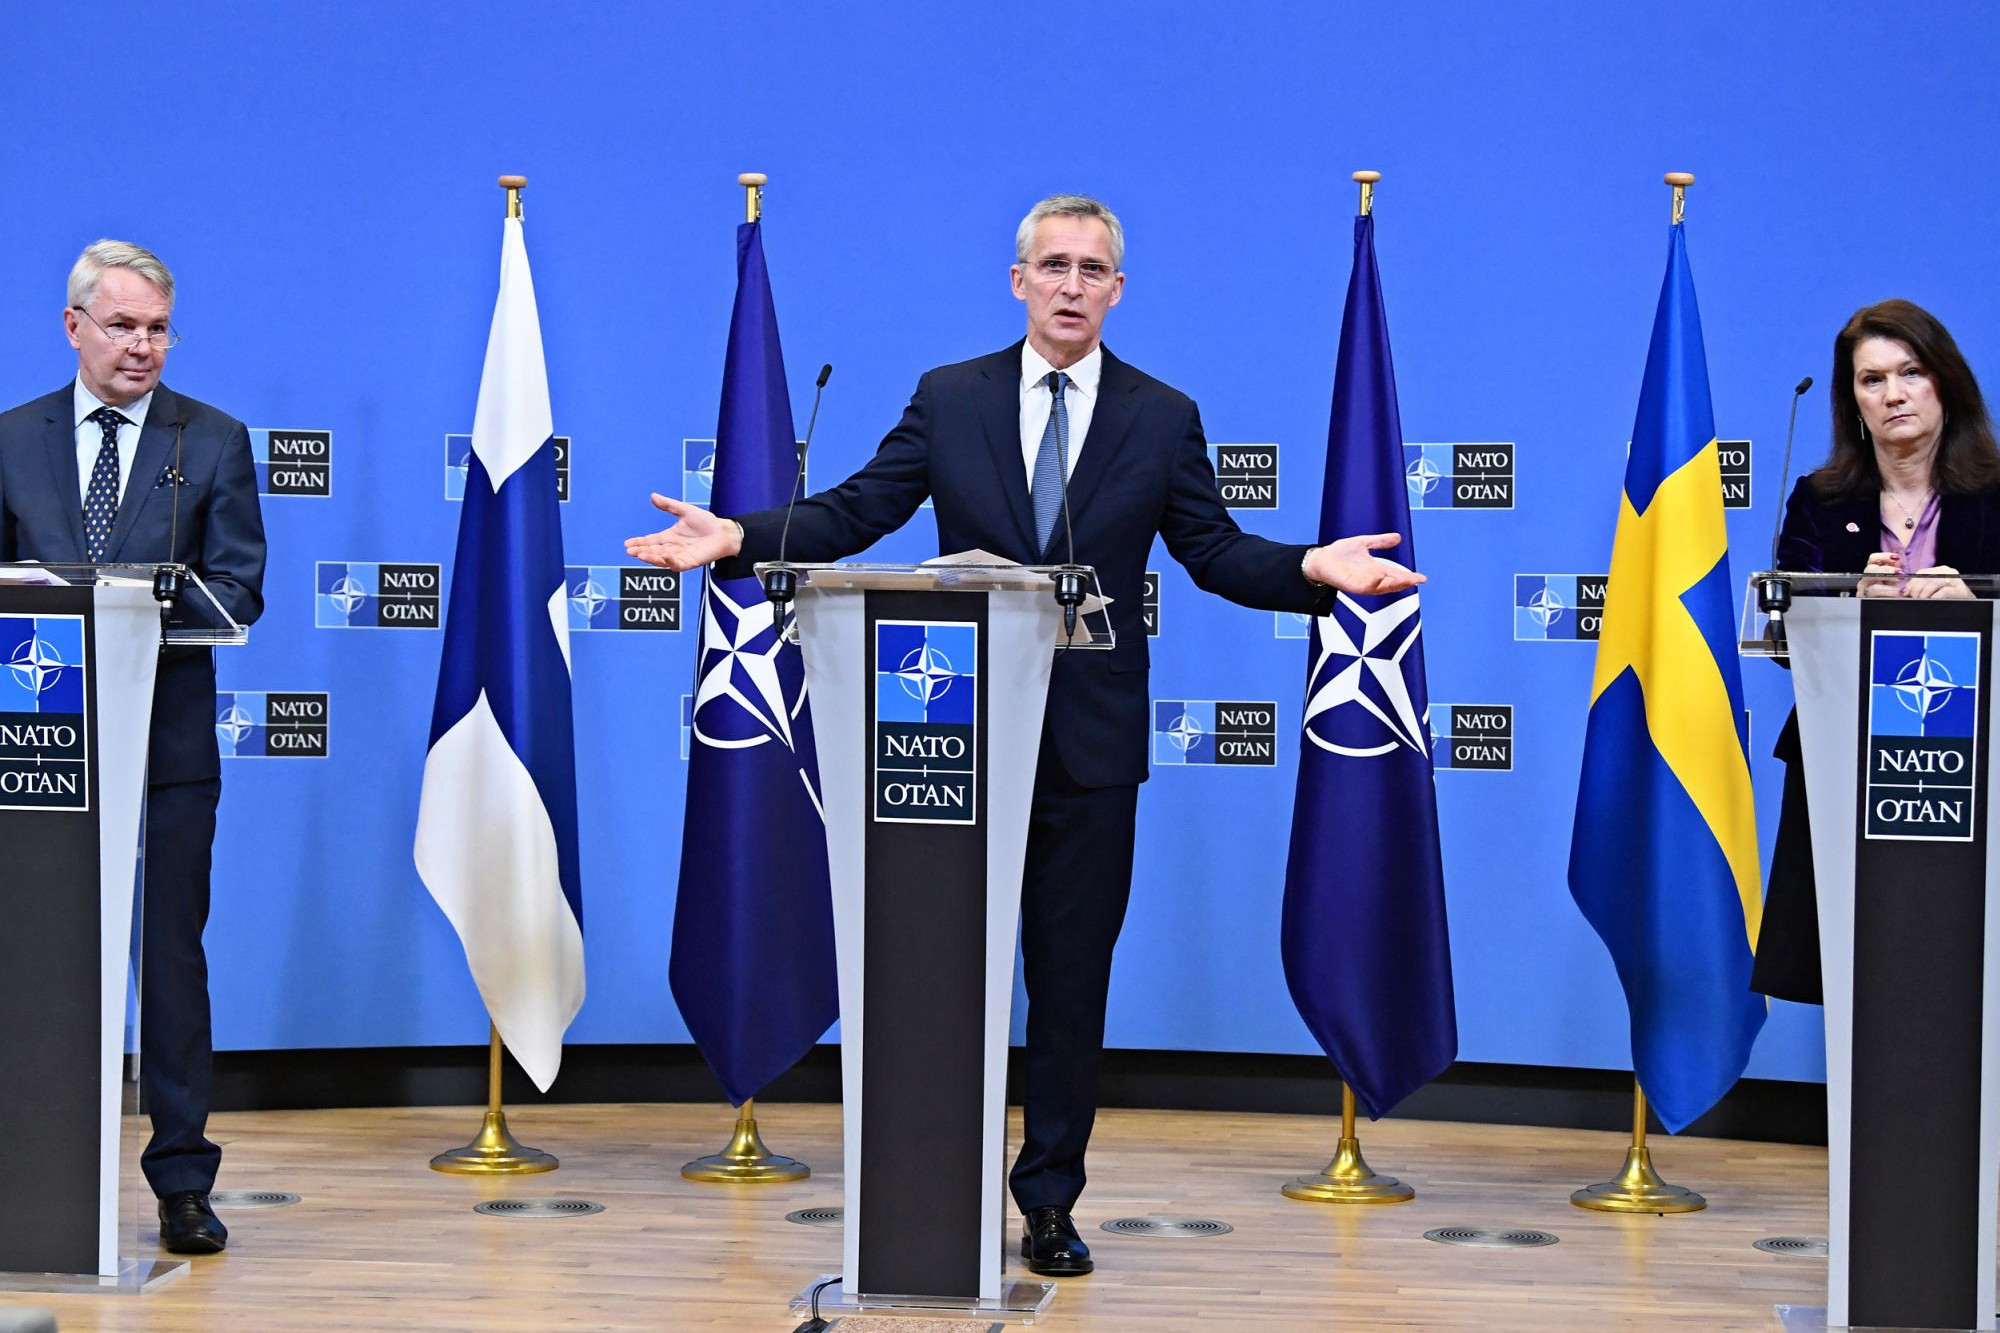 Новости про нато. Швеция и Финляндия вступление в НАТО. Швеция в НАТО 2022. Финляндия в НАТО 2022. Саммит НАТО 2023.